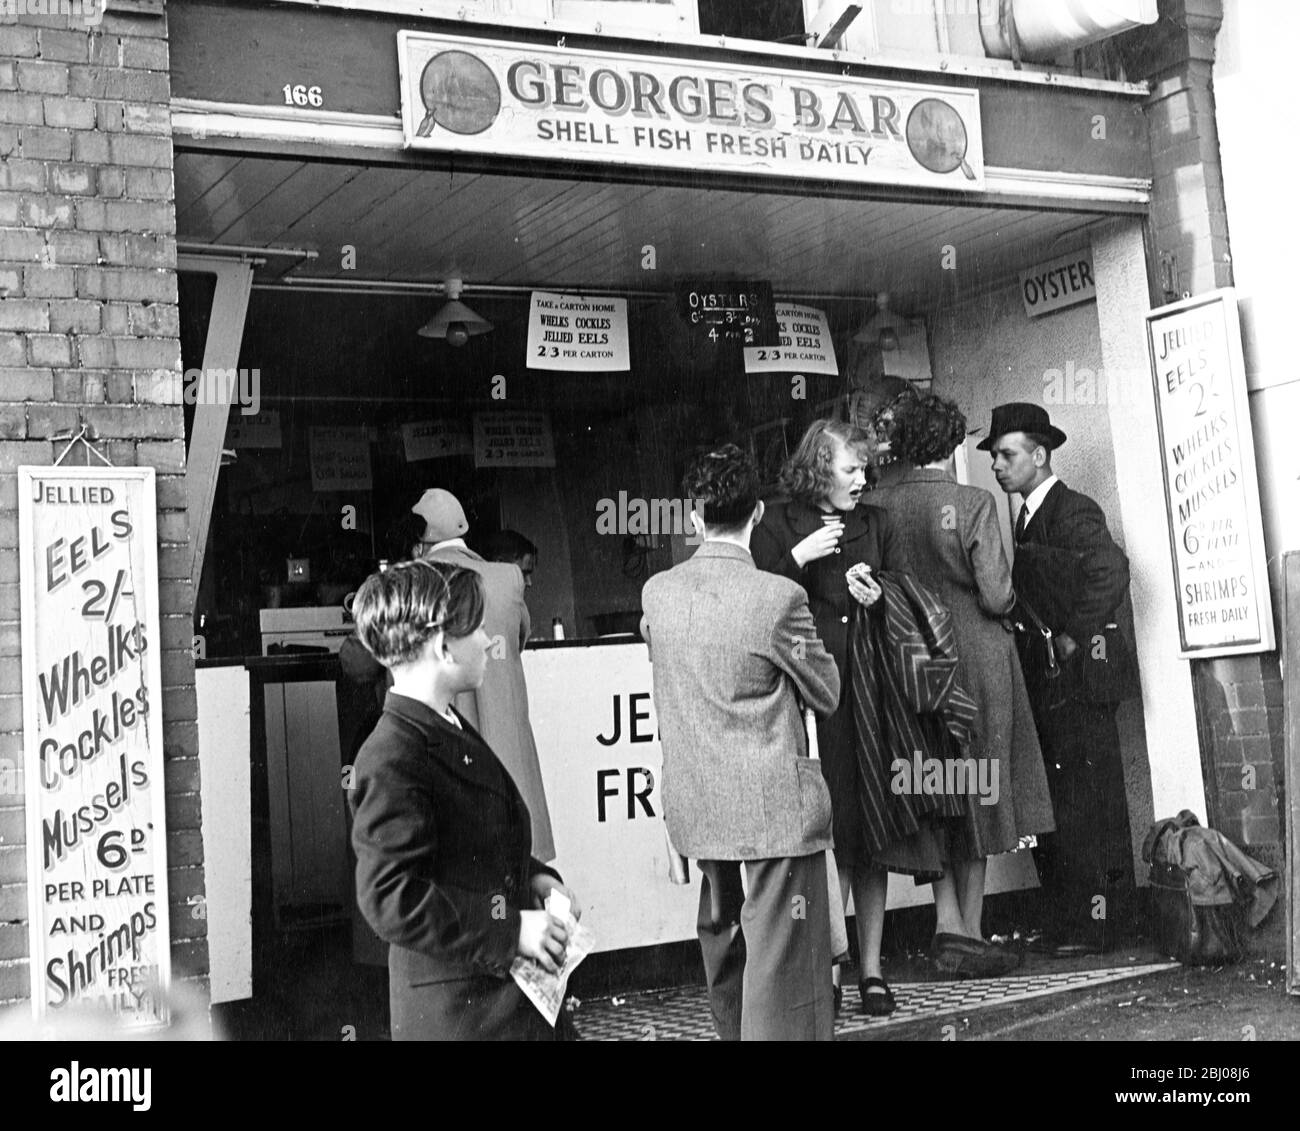 George's Bar - Shell Fish Fresh Daily - une file d'attente de gens attendent d'être servis mais une femme qui vient de recevoir sa commande ne semble pas trop impressionné par le goût. - années 1950 Banque D'Images